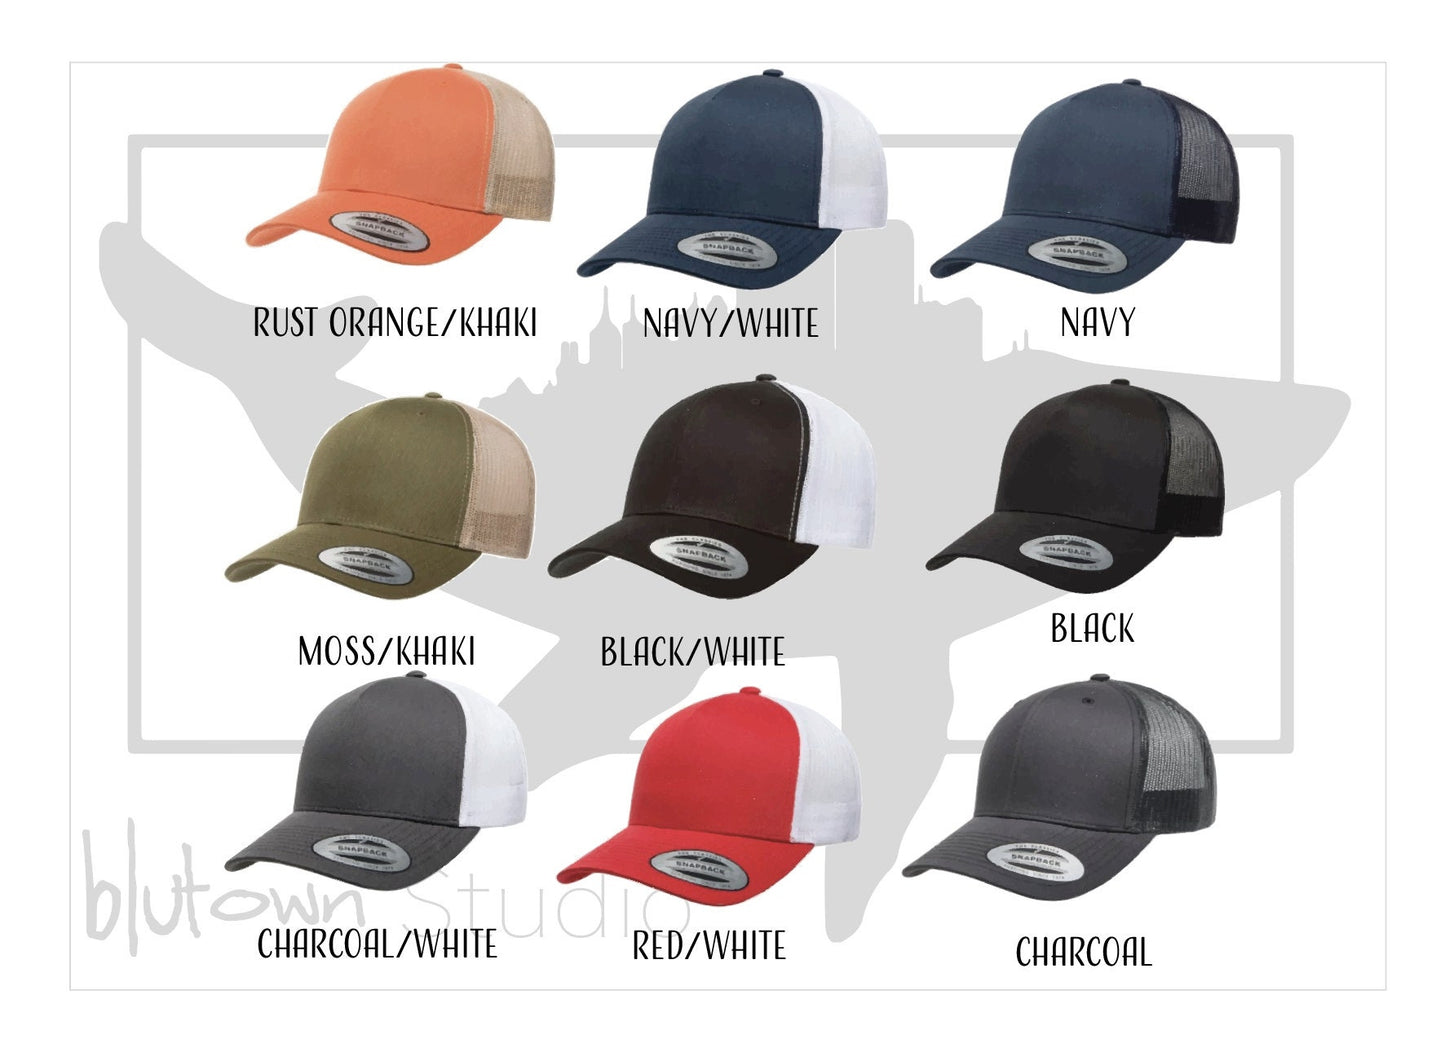 Bass Silhouette Trucker Hat| Fishing Hat| Outdoors Trucker Hat